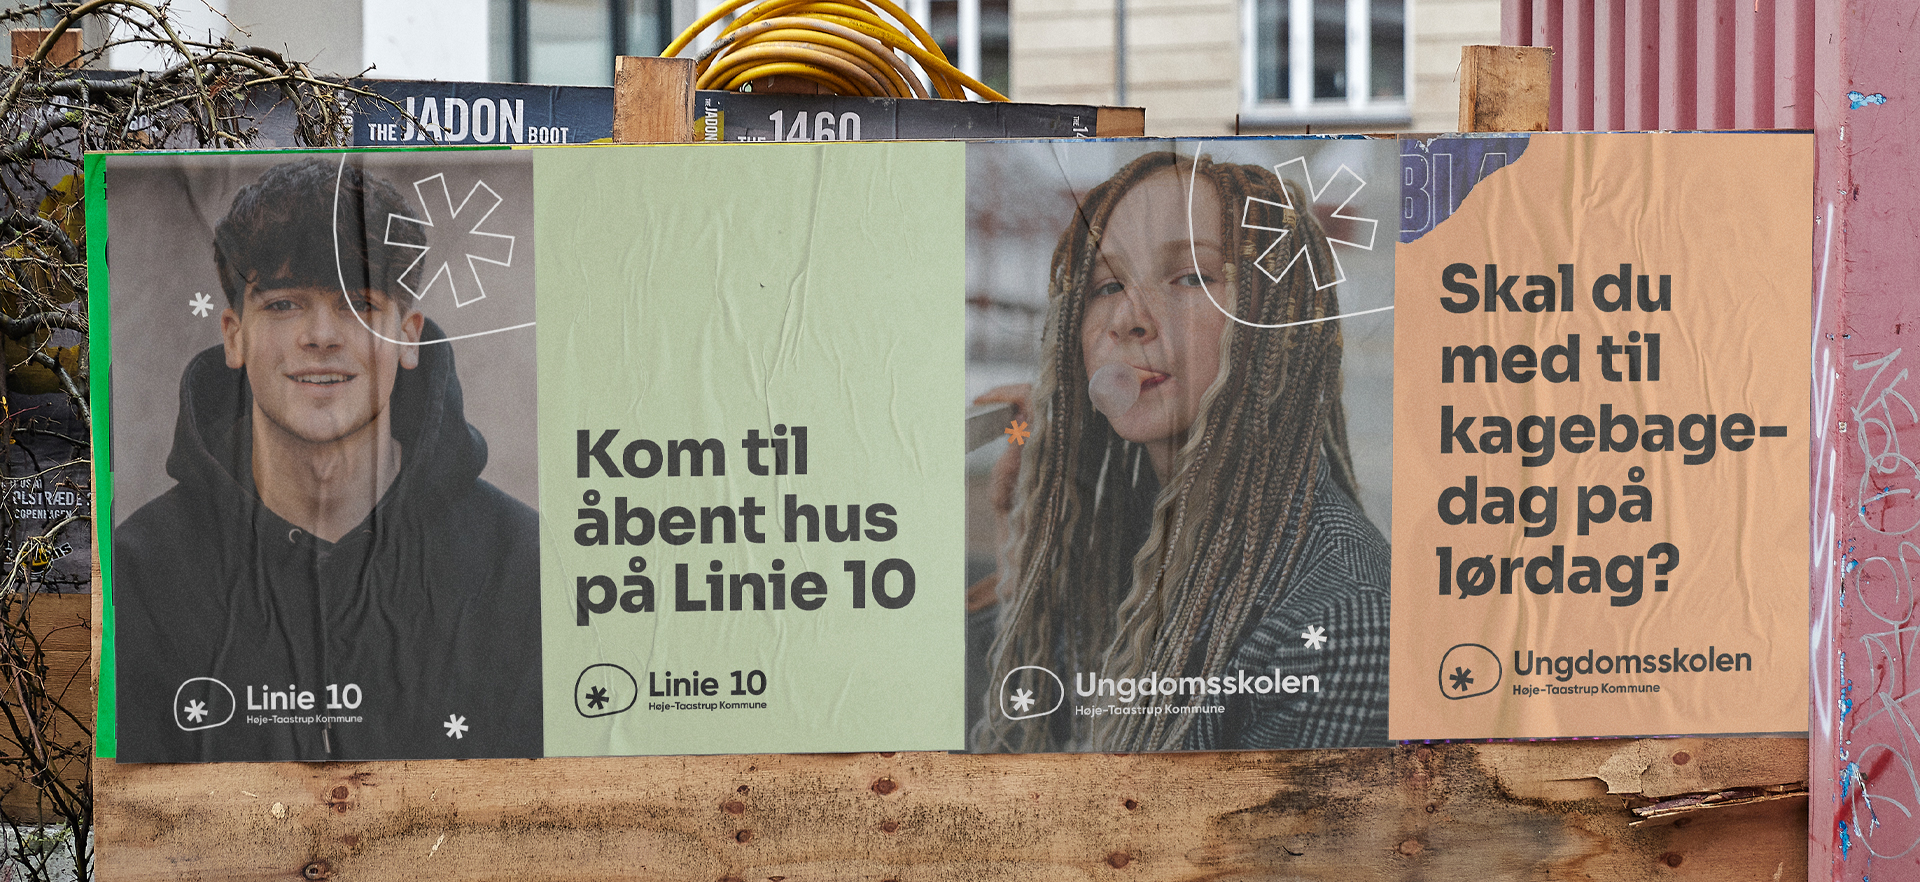 Upland Studio, Høje Taastrup ungdomsskole og Linie 10 poster